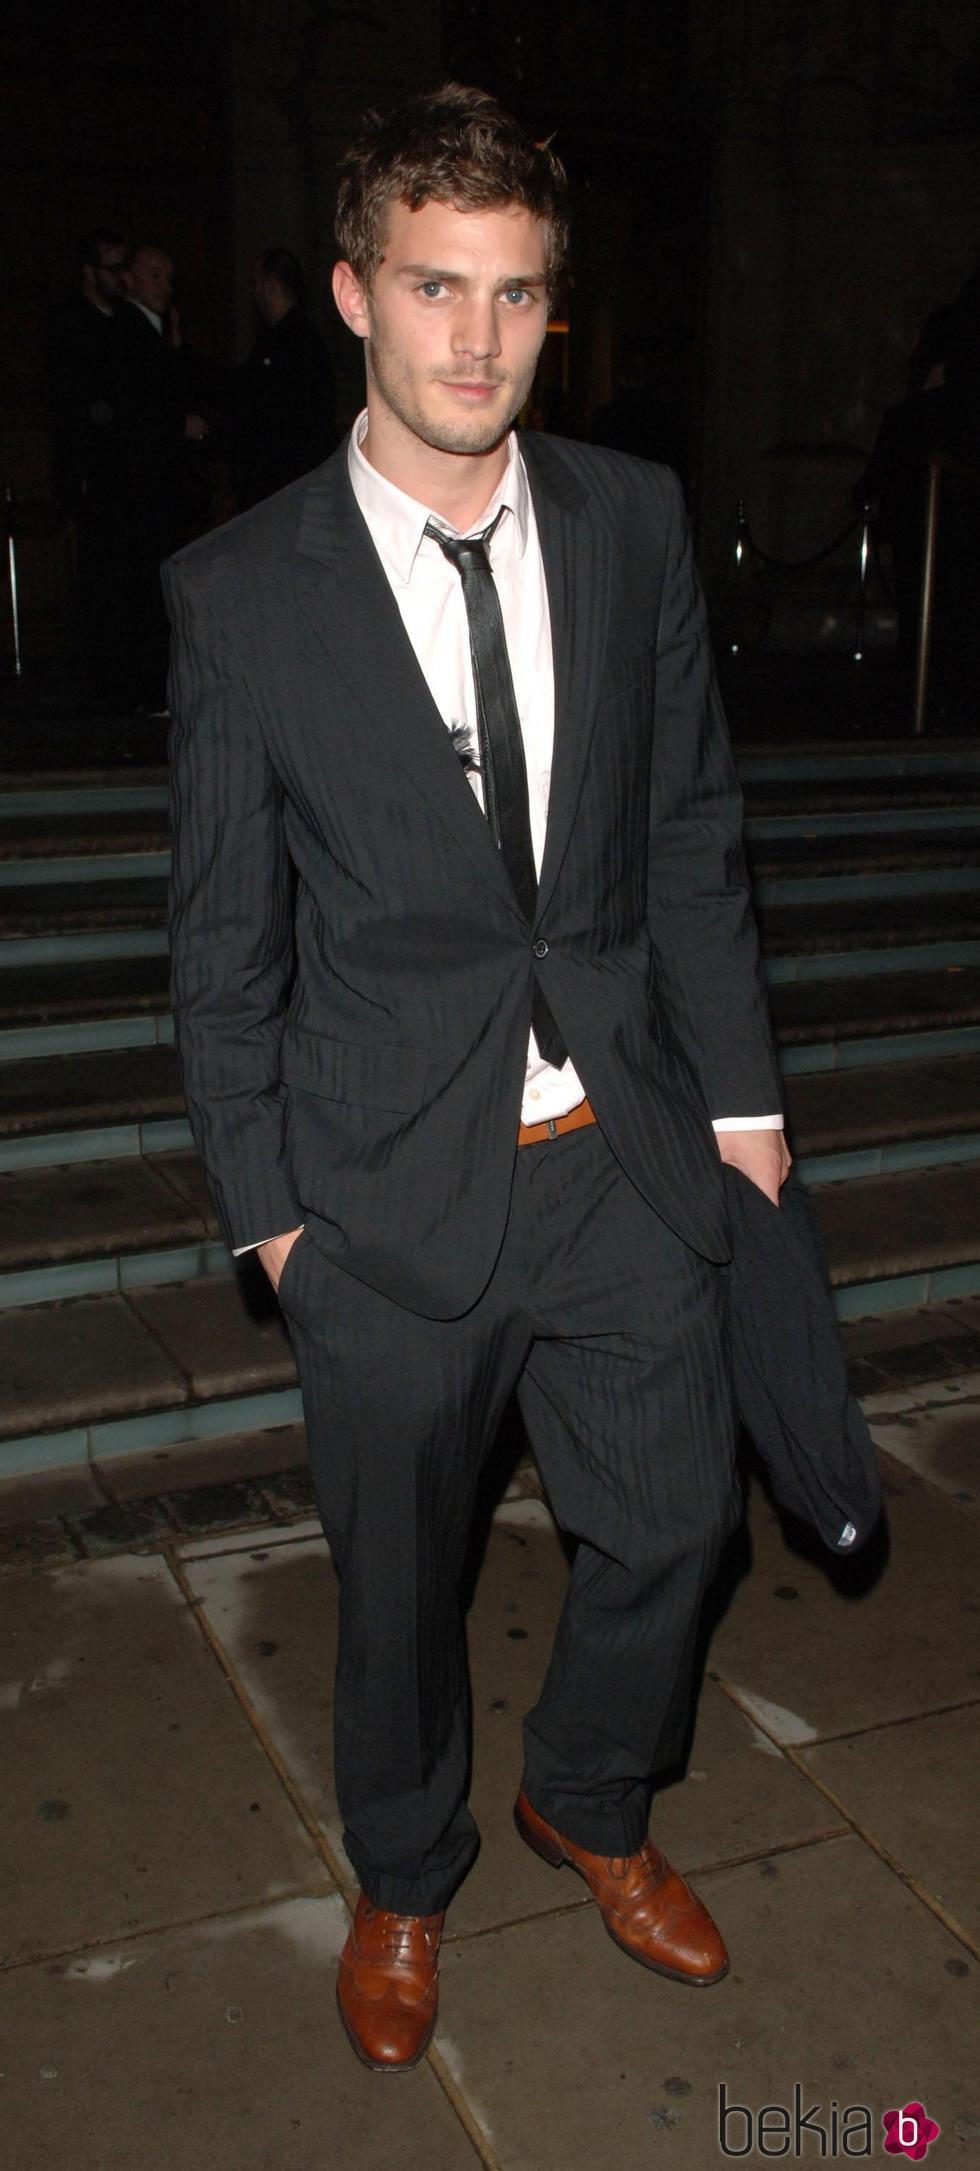 Jamie Dornan con traje negro, camisa blanca y corbata estrecha